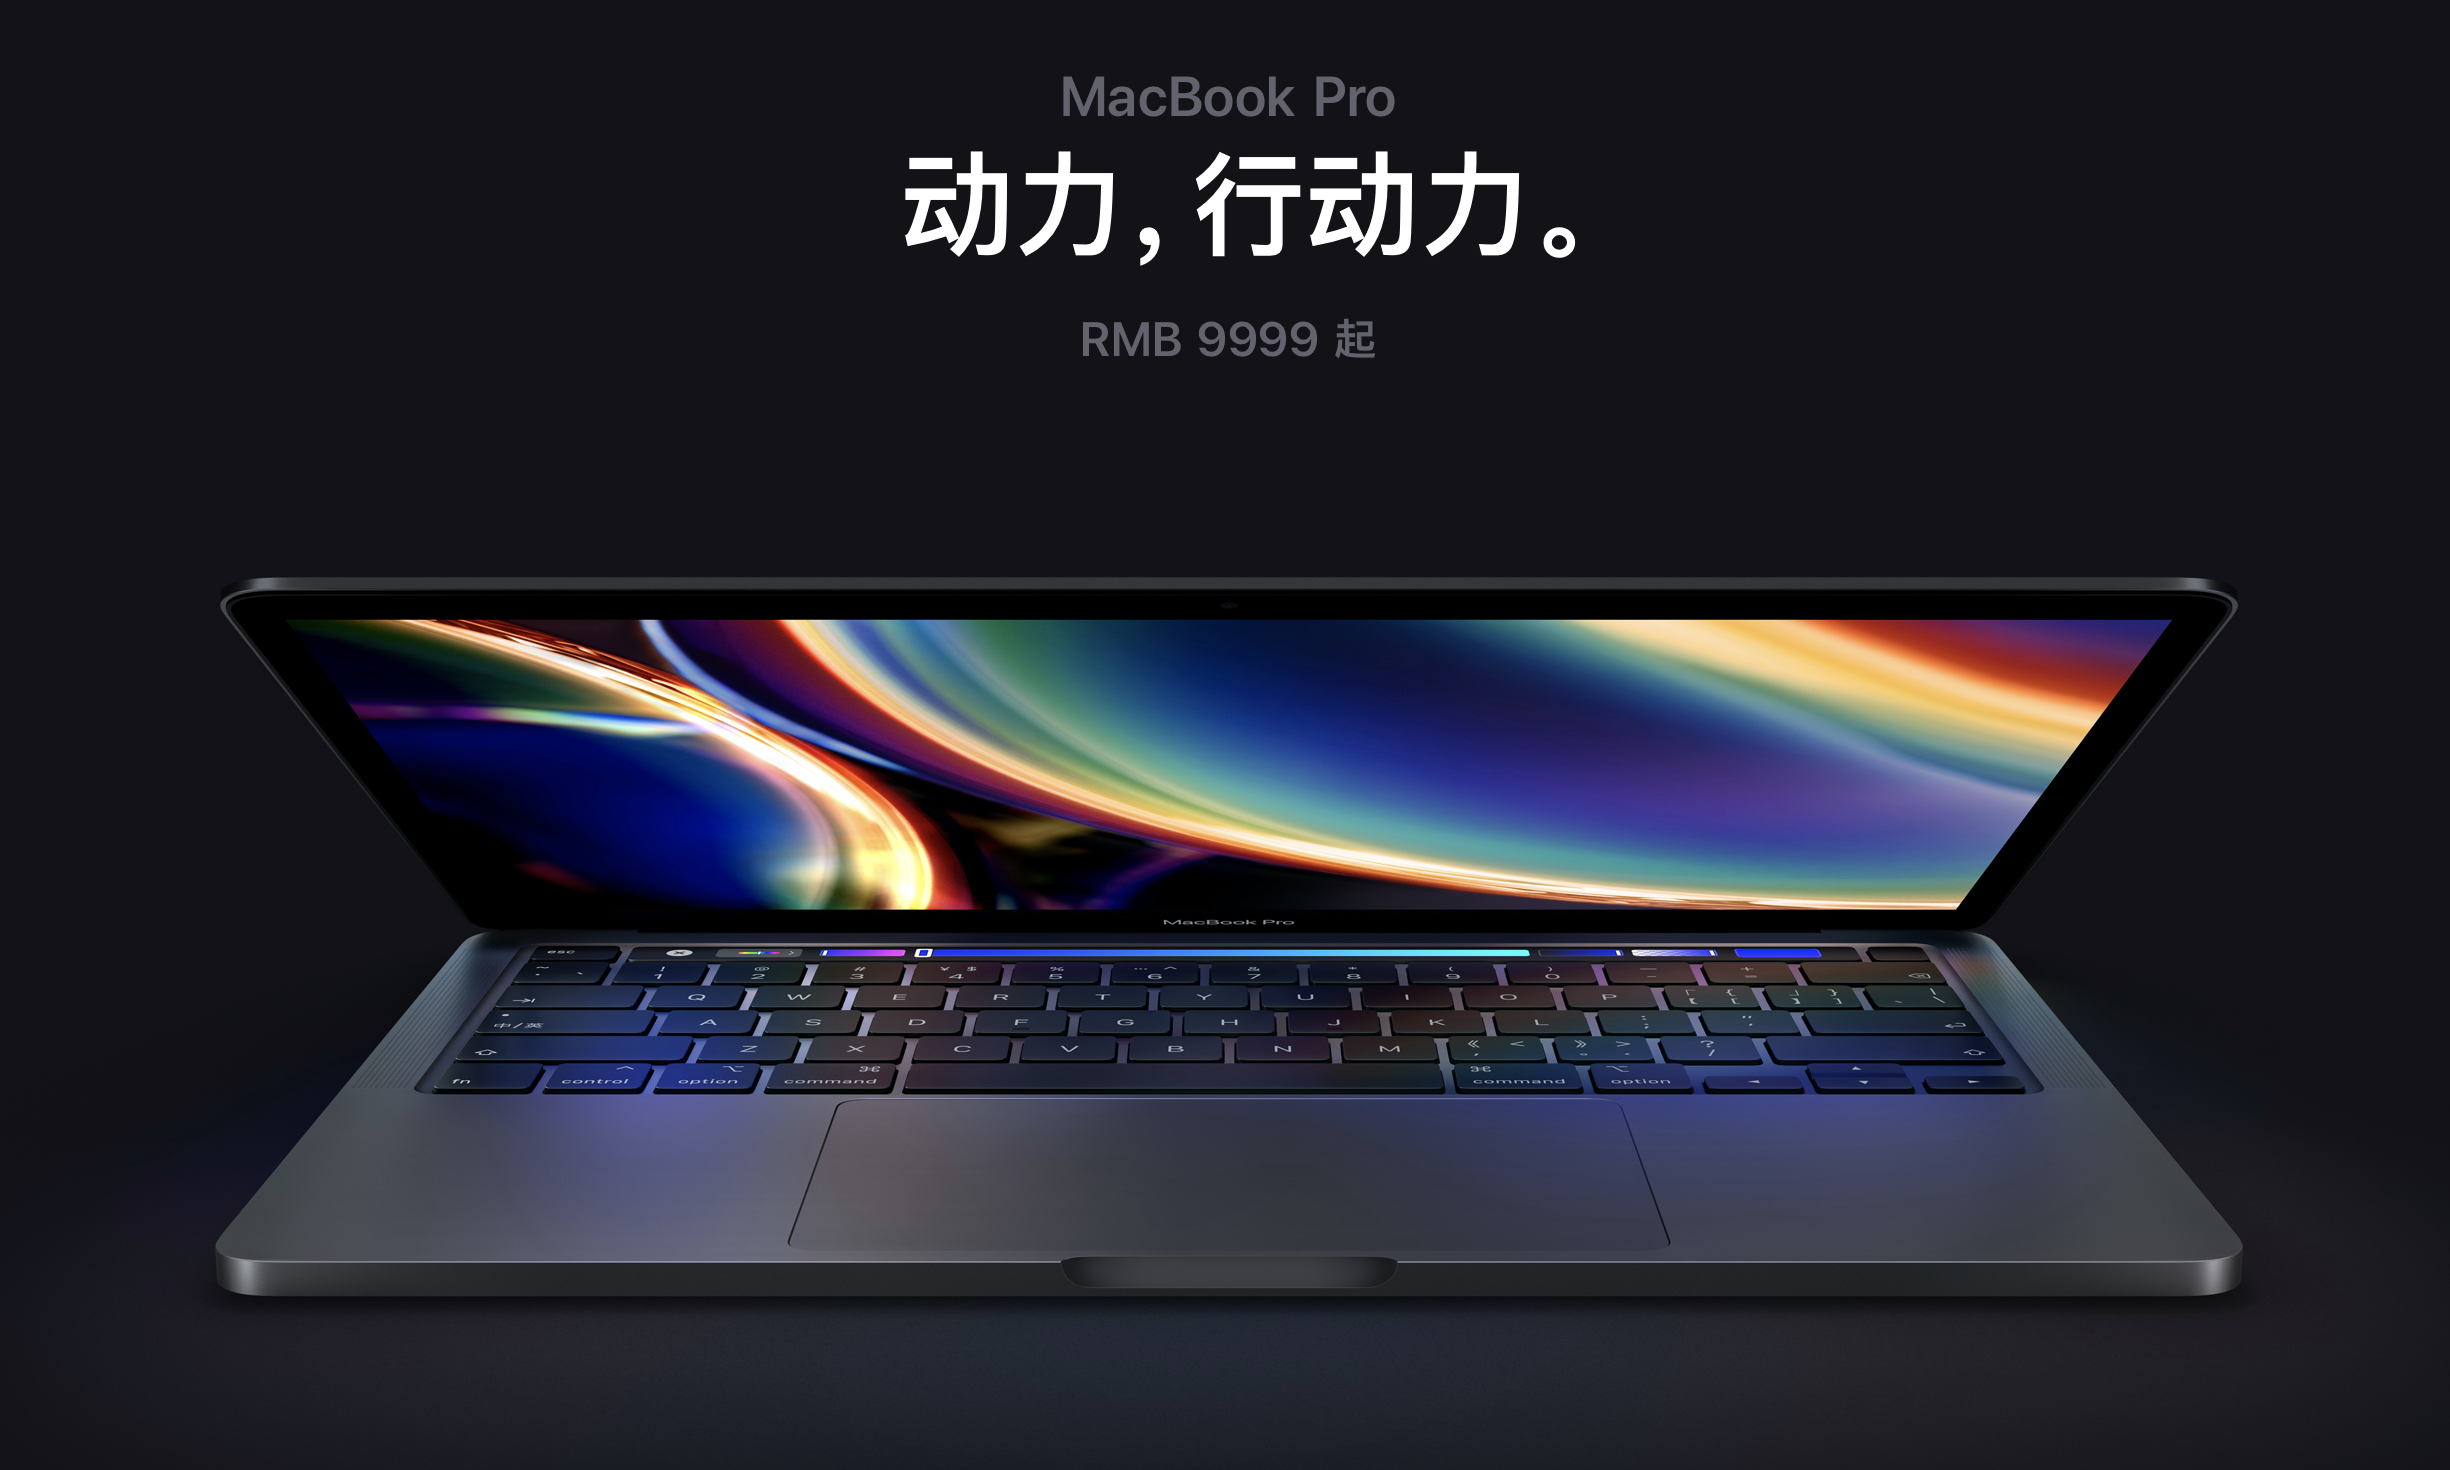 新款 13 英寸 MacBook Pro 今日正式开售